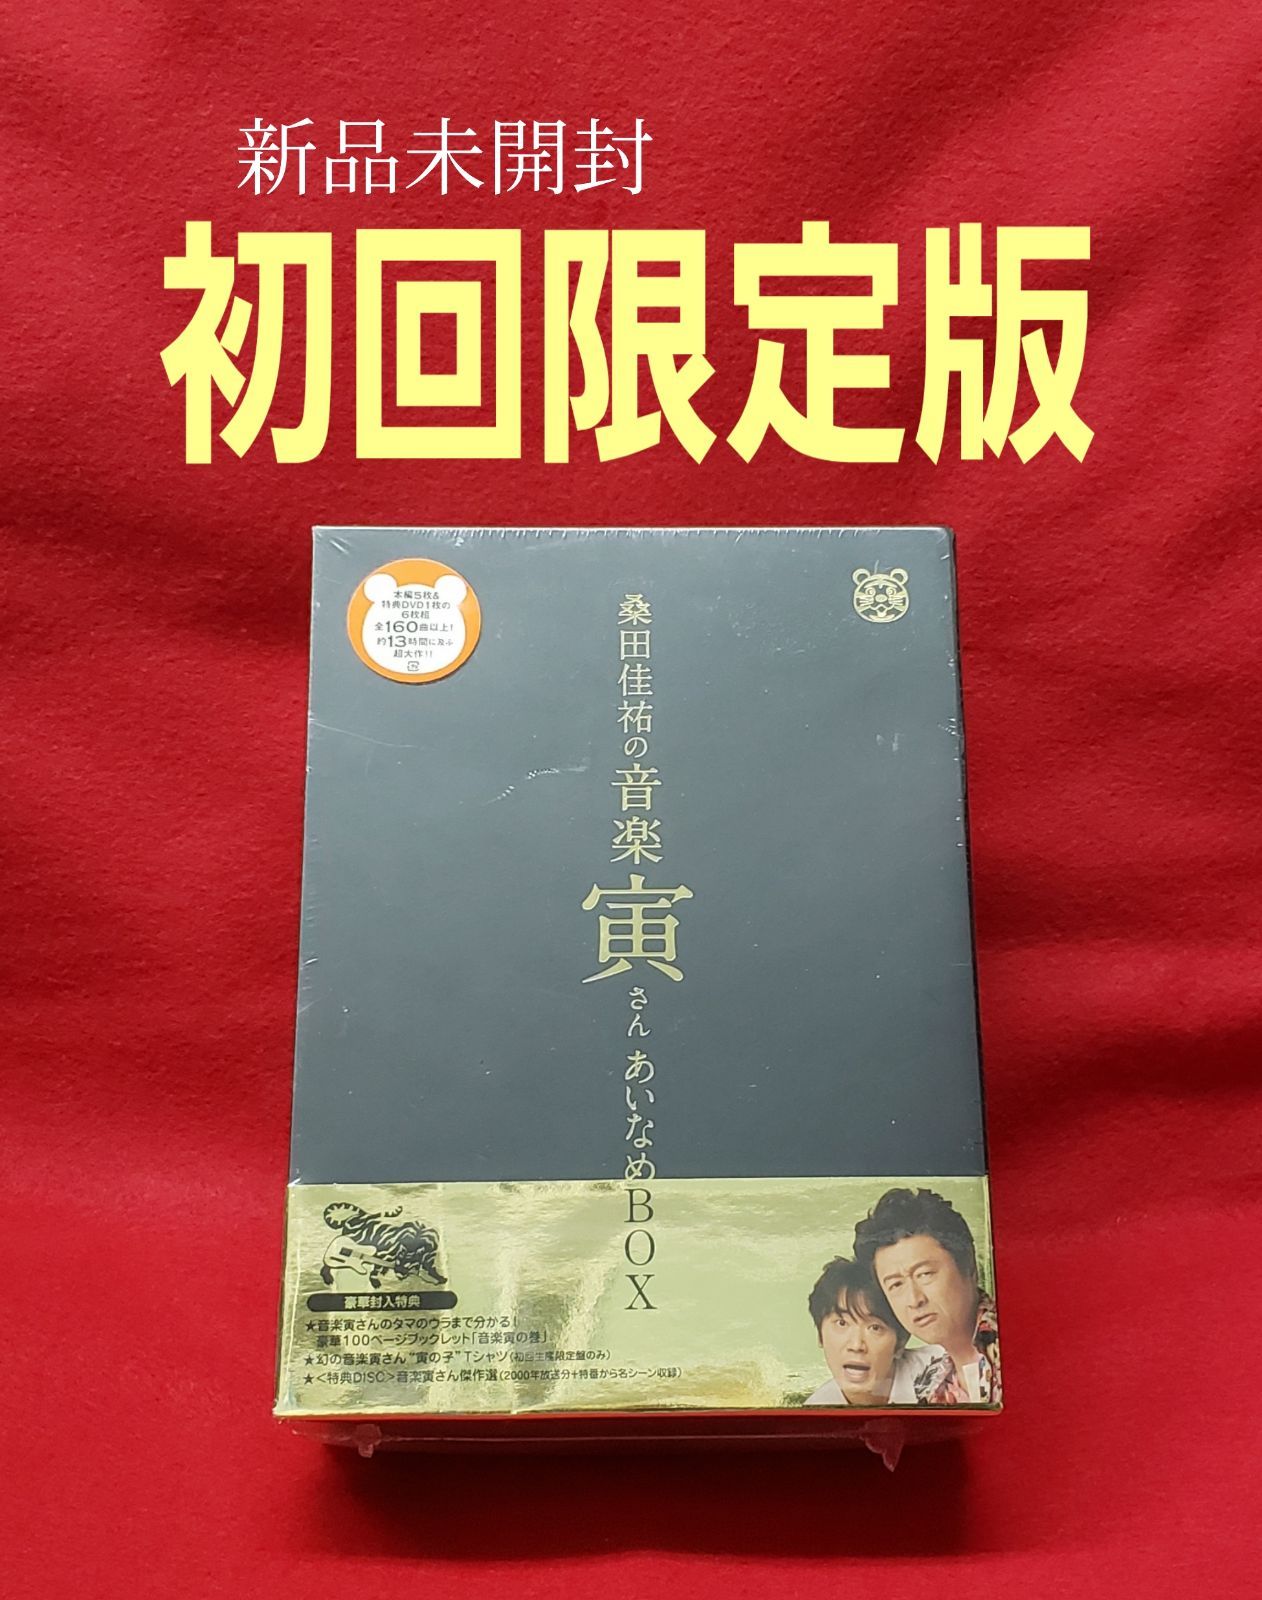 桑田佳祐の音楽寅さん～MUSIC TIGER～』あいなめBOX」の初回生産限定盤 